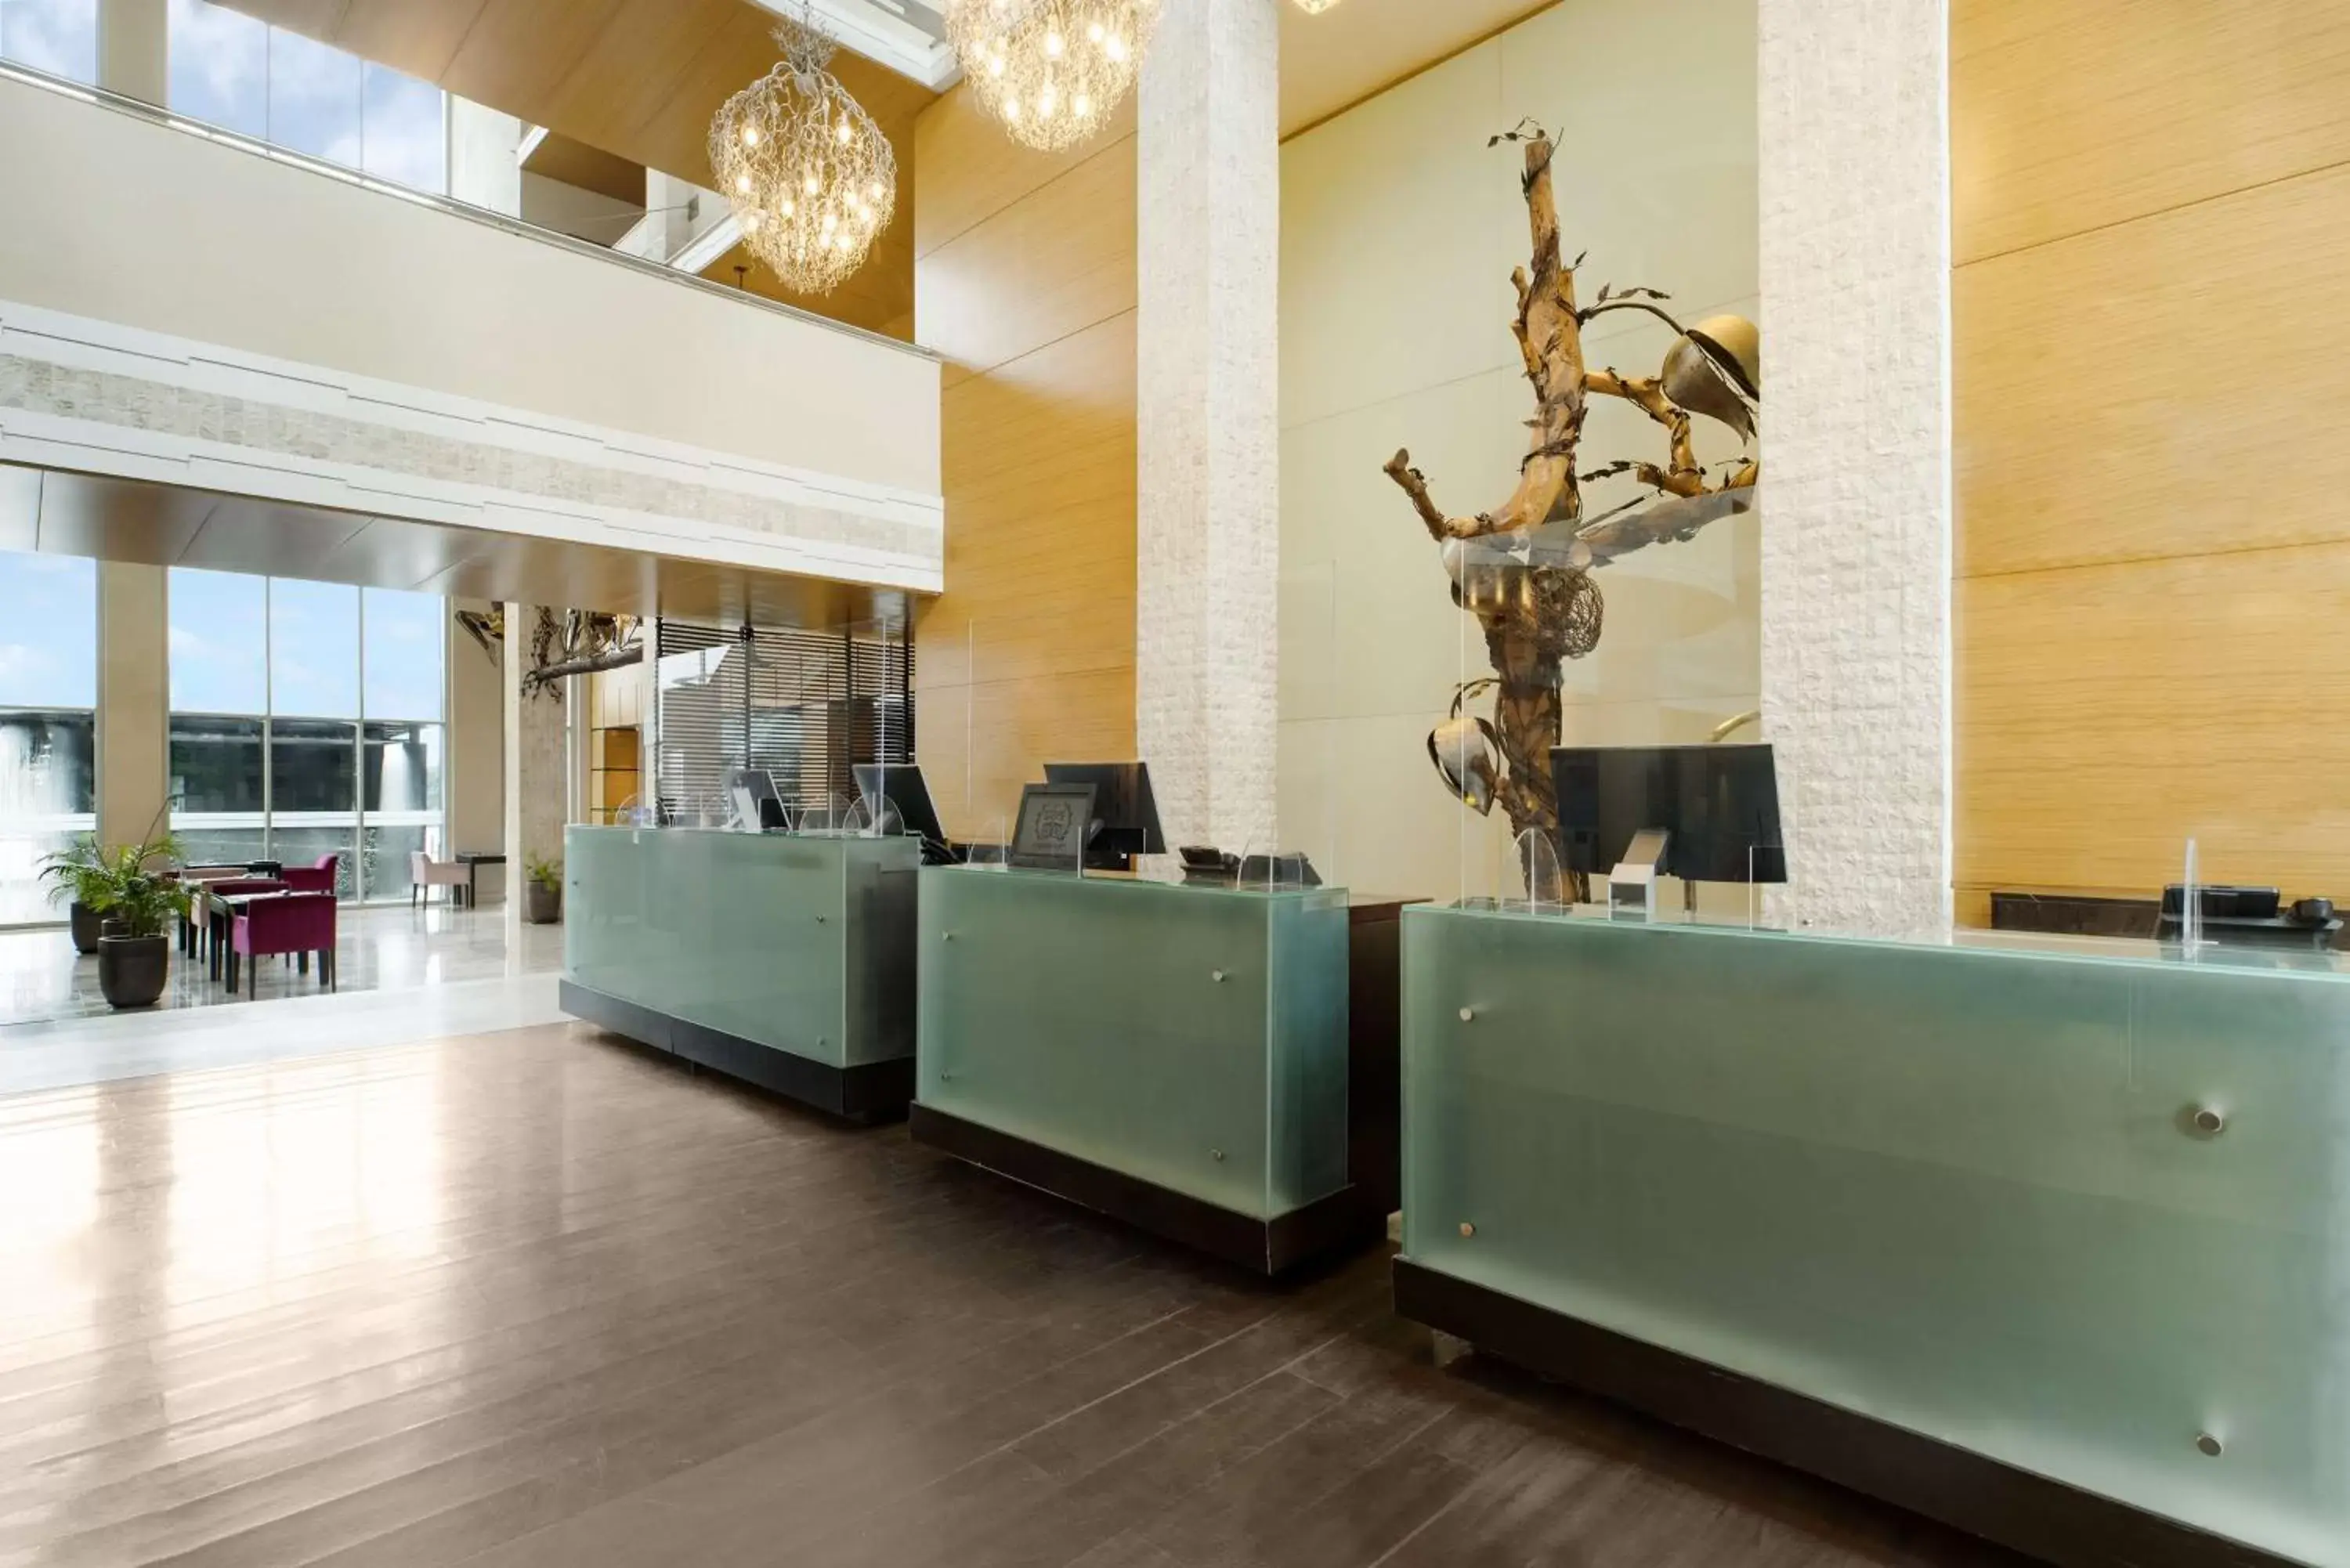 Lobby or reception, Lobby/Reception in Radisson Blu Anchorage Hotel